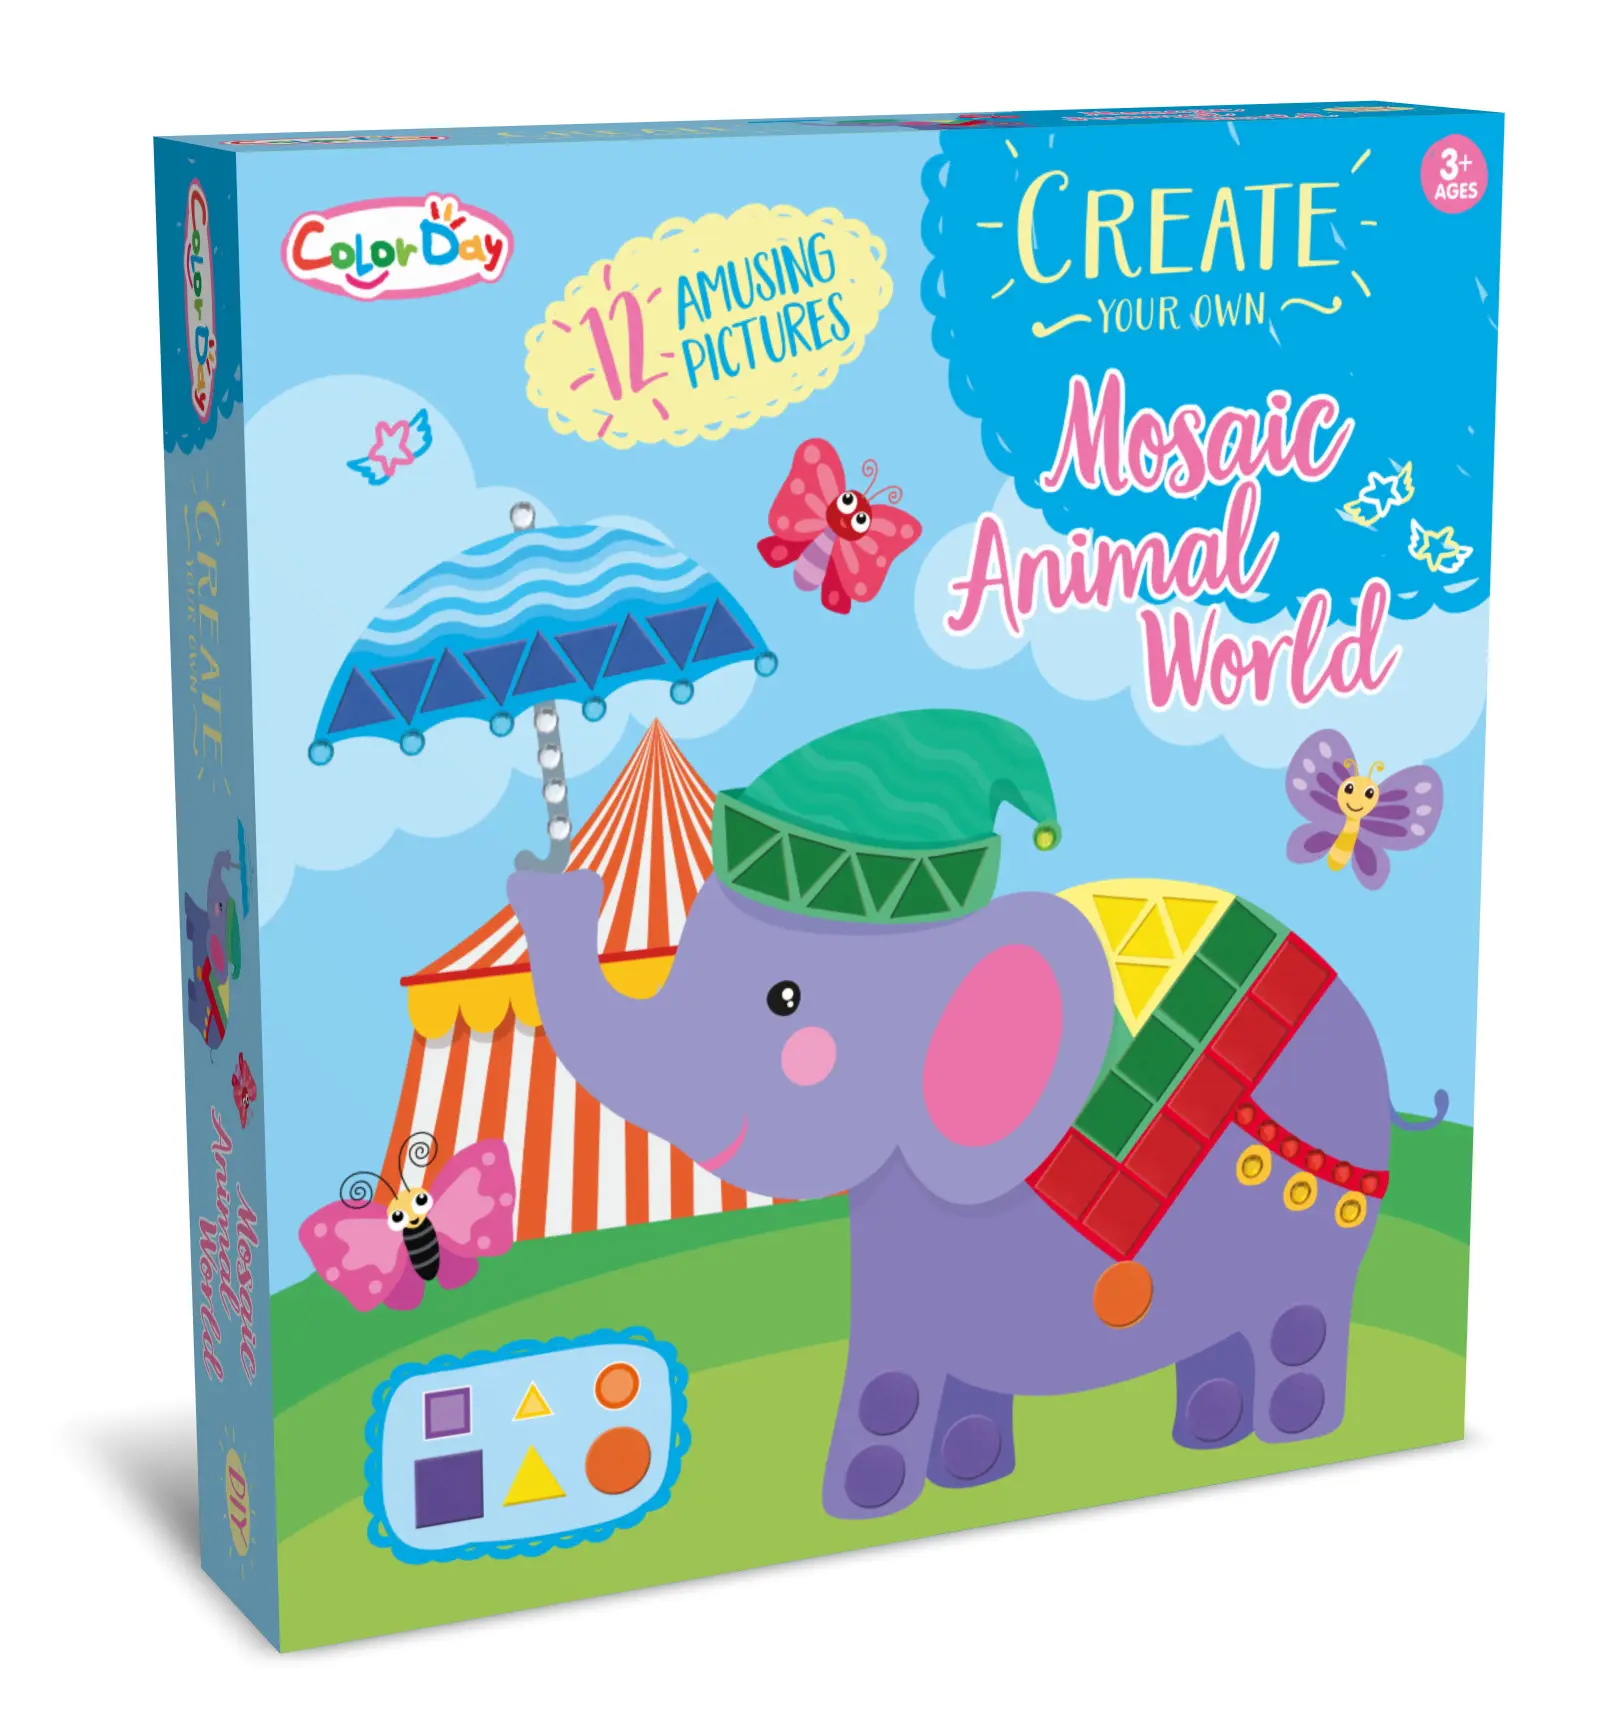 Mosaico criativo digital pasta brinquedos infantis, diy divertido cartão de visita presente desenho à mão